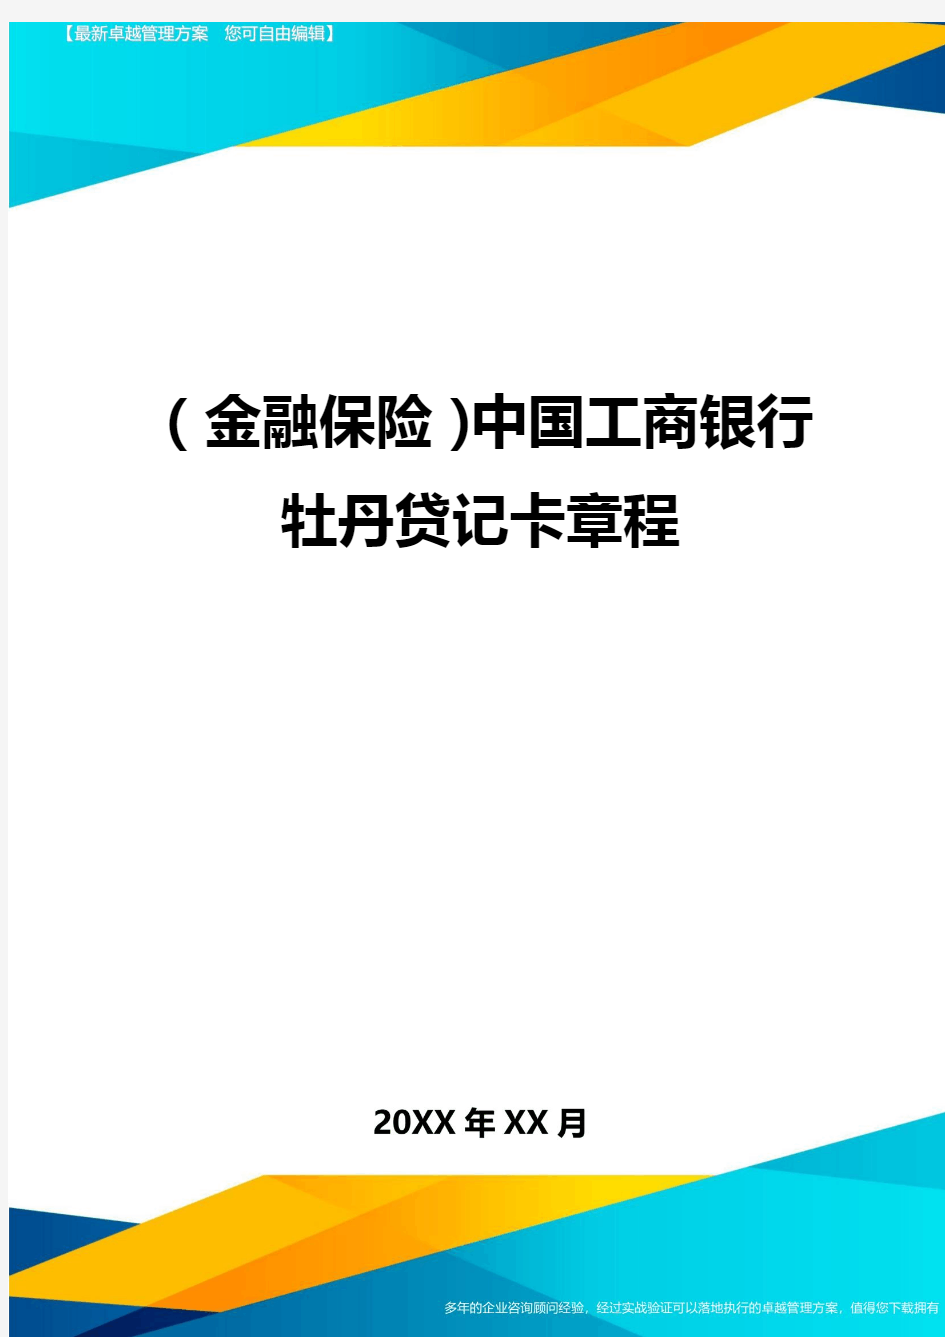 2020年(金融保险)中国工商银行牡丹贷记卡章程